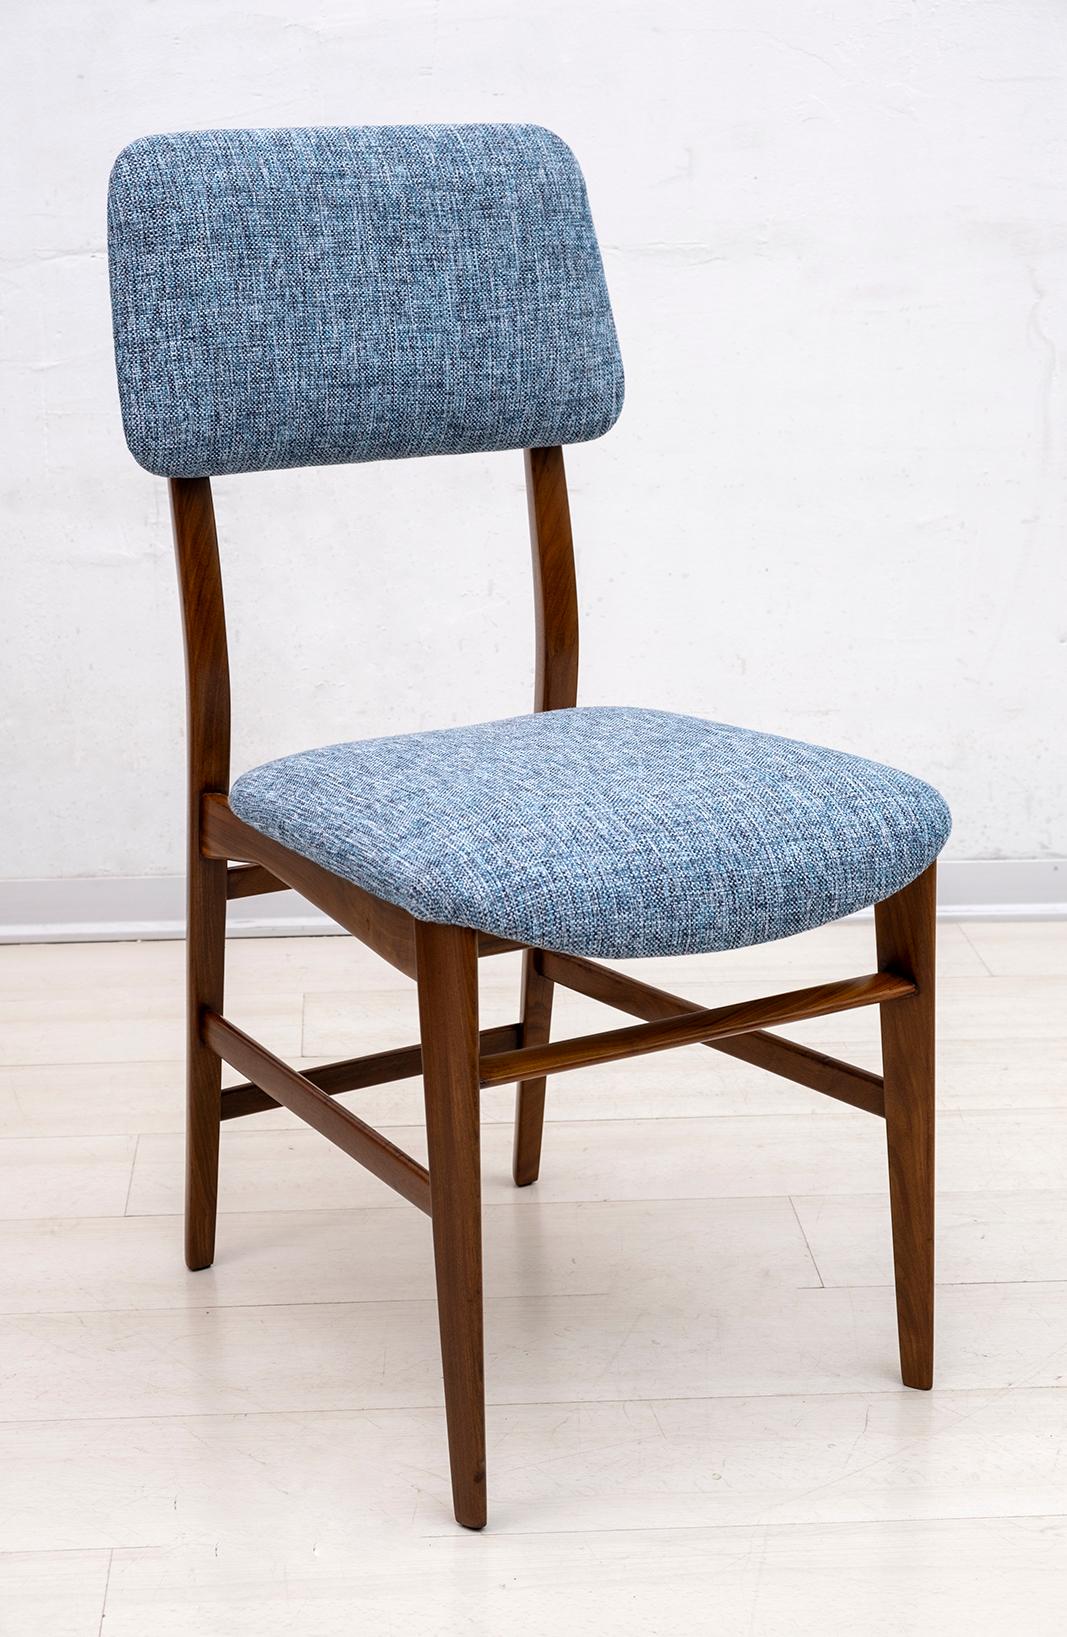 Sechs schöne Stühle, entworfen von Edmondo Palutari für Dassi, die Stühle sind aus Teakholz und wurden restauriert und mit einem neuen Hanfstoff bezogen, ähnlich dem Original, Italien, 1950er Jahre.